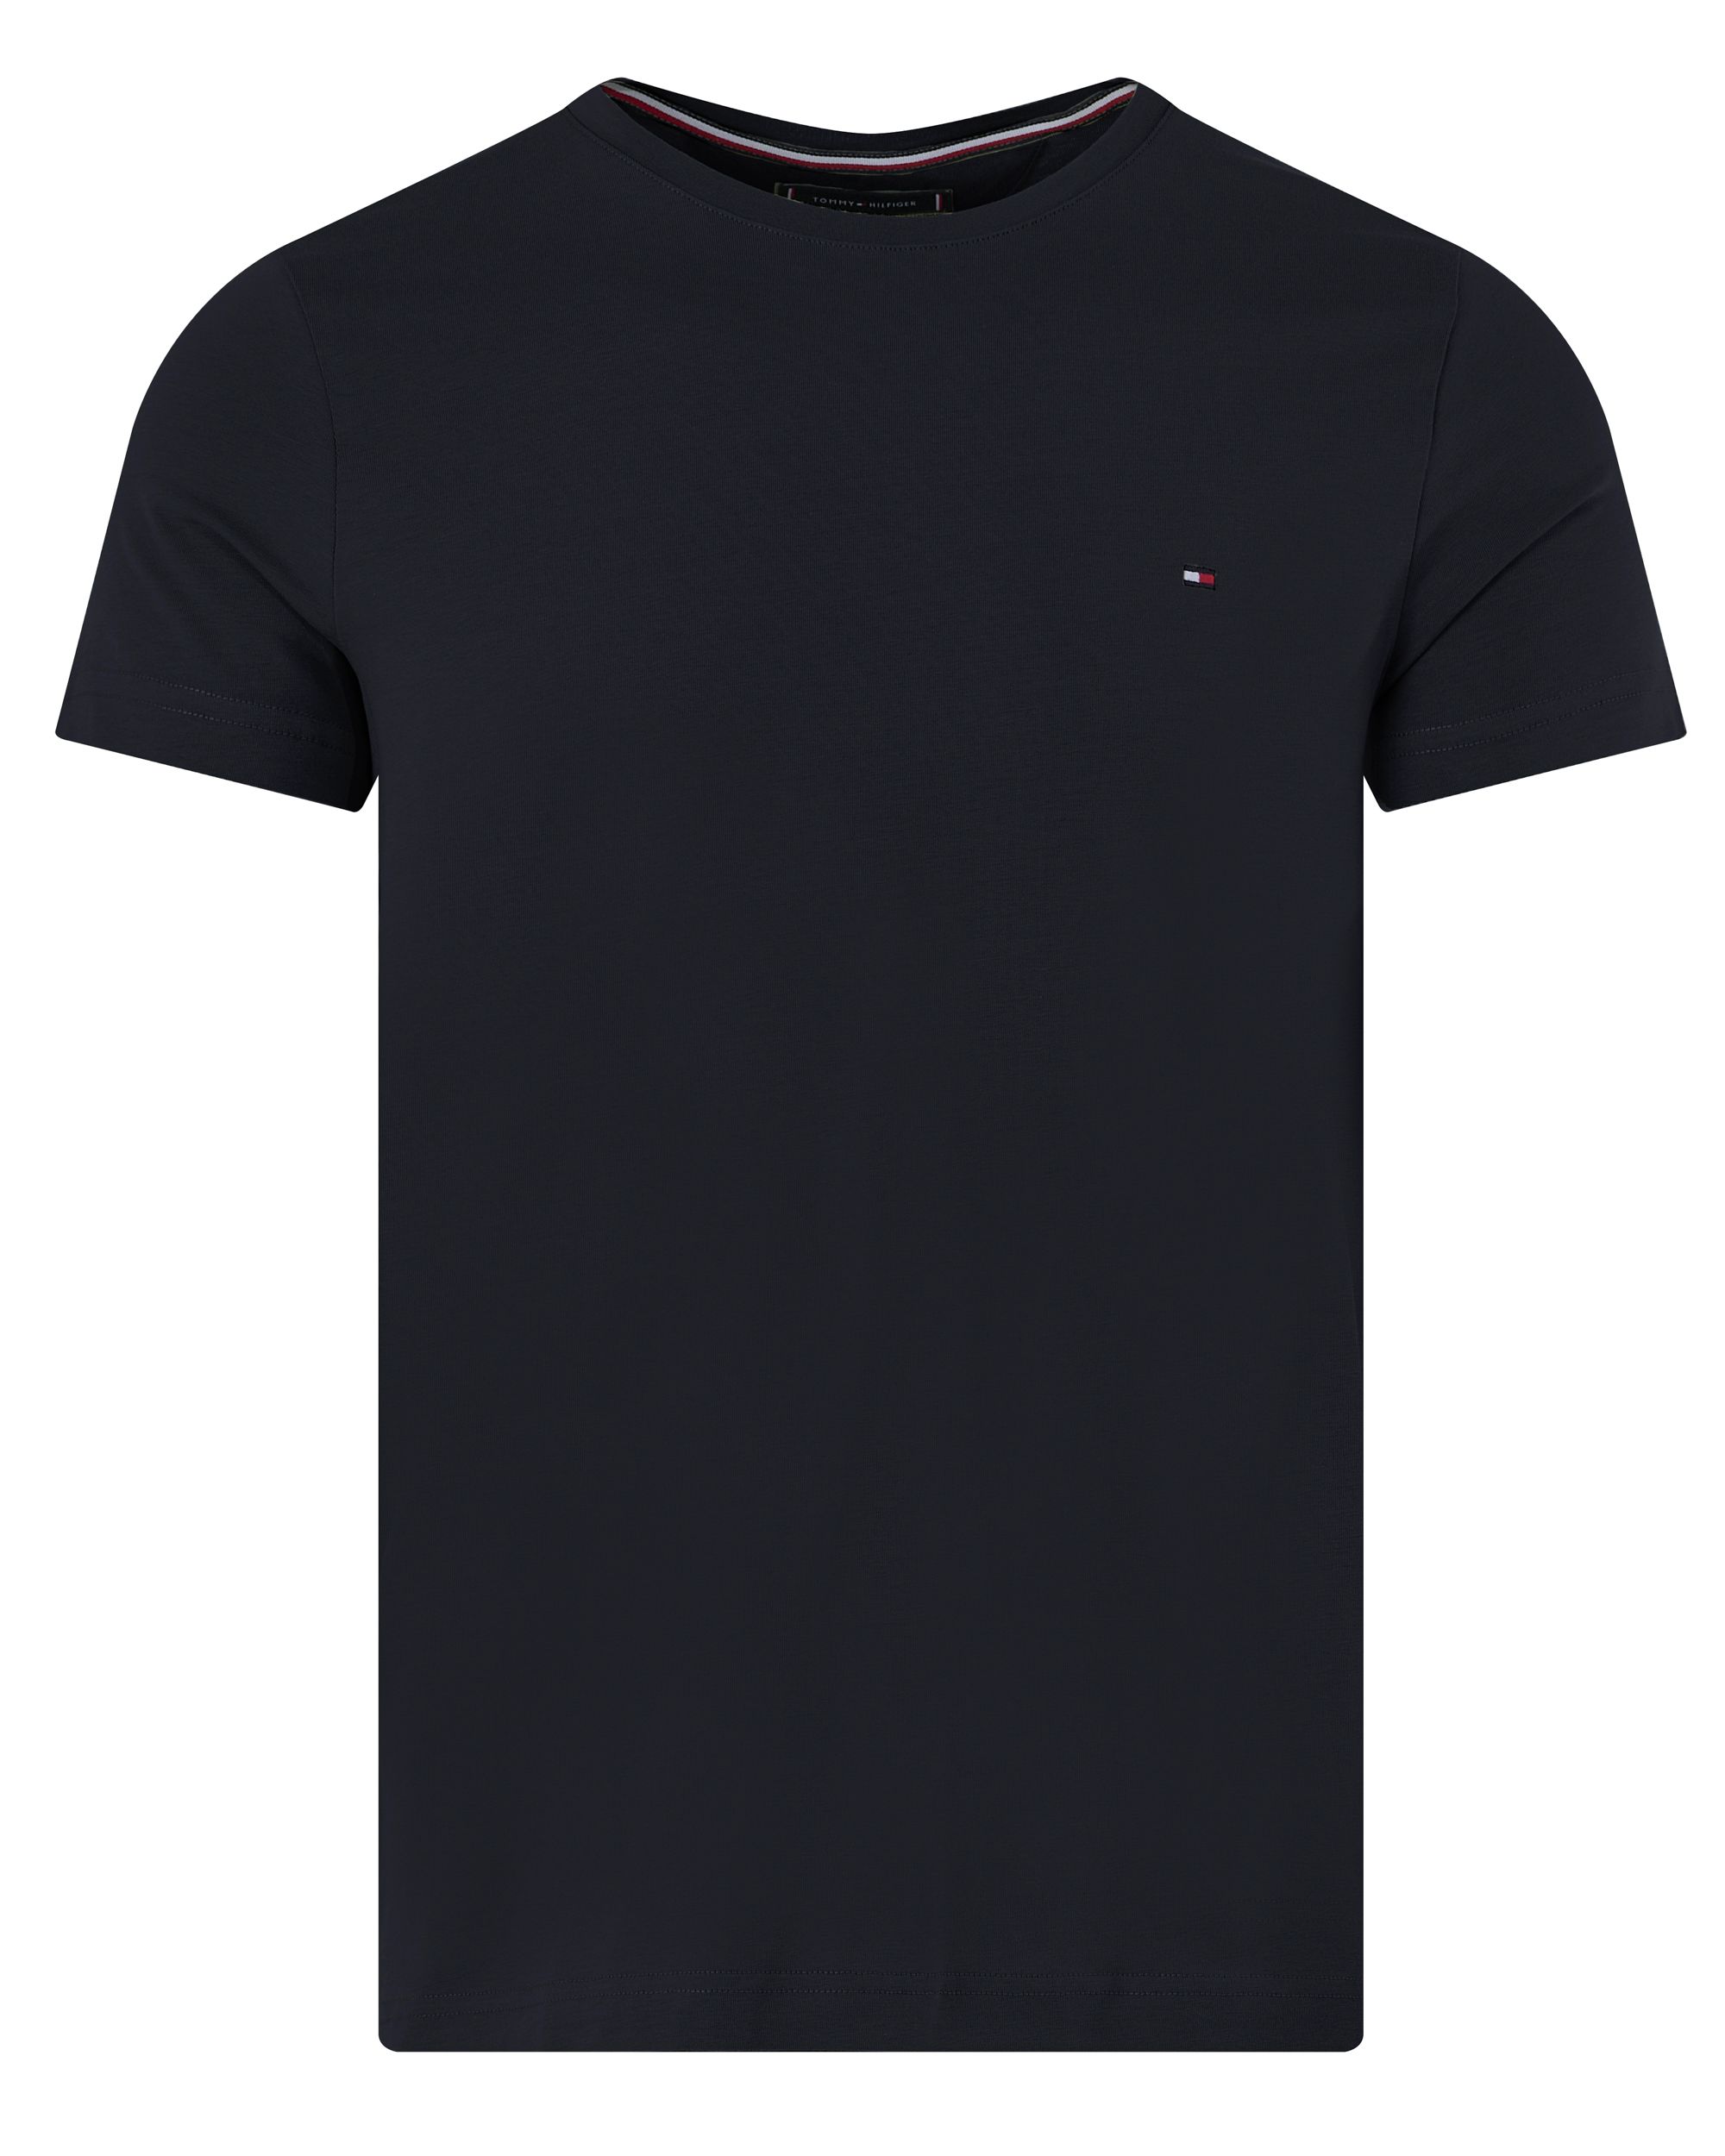 Tommy Hilfiger Menswear T-shirt KM Donker grijs 094637-001-L